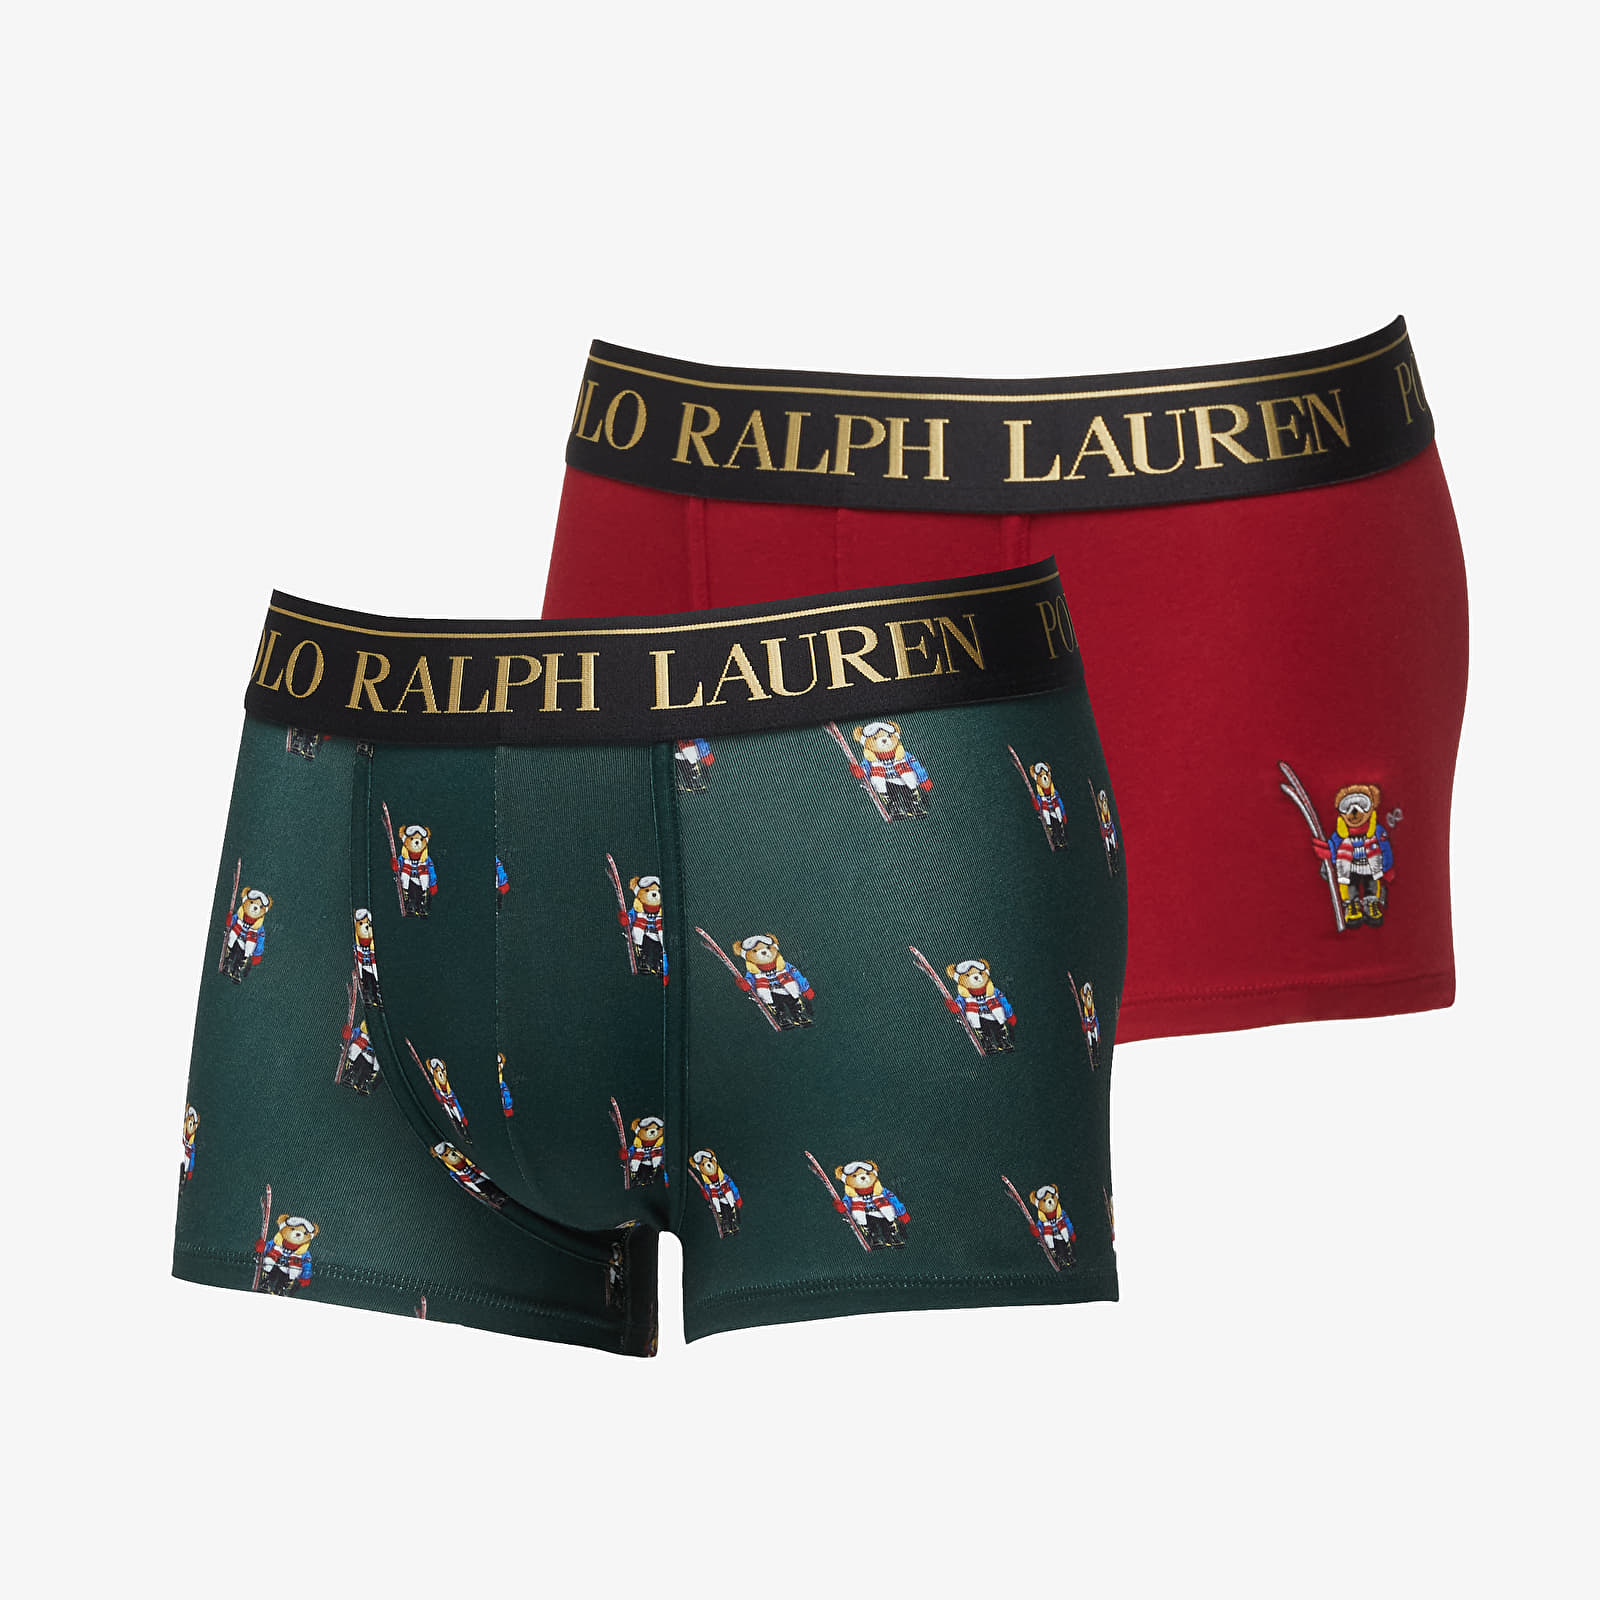 Boxer shorts Ralph Lauren Polo Stretch Cotton Boxer 2-Pack Multicolor